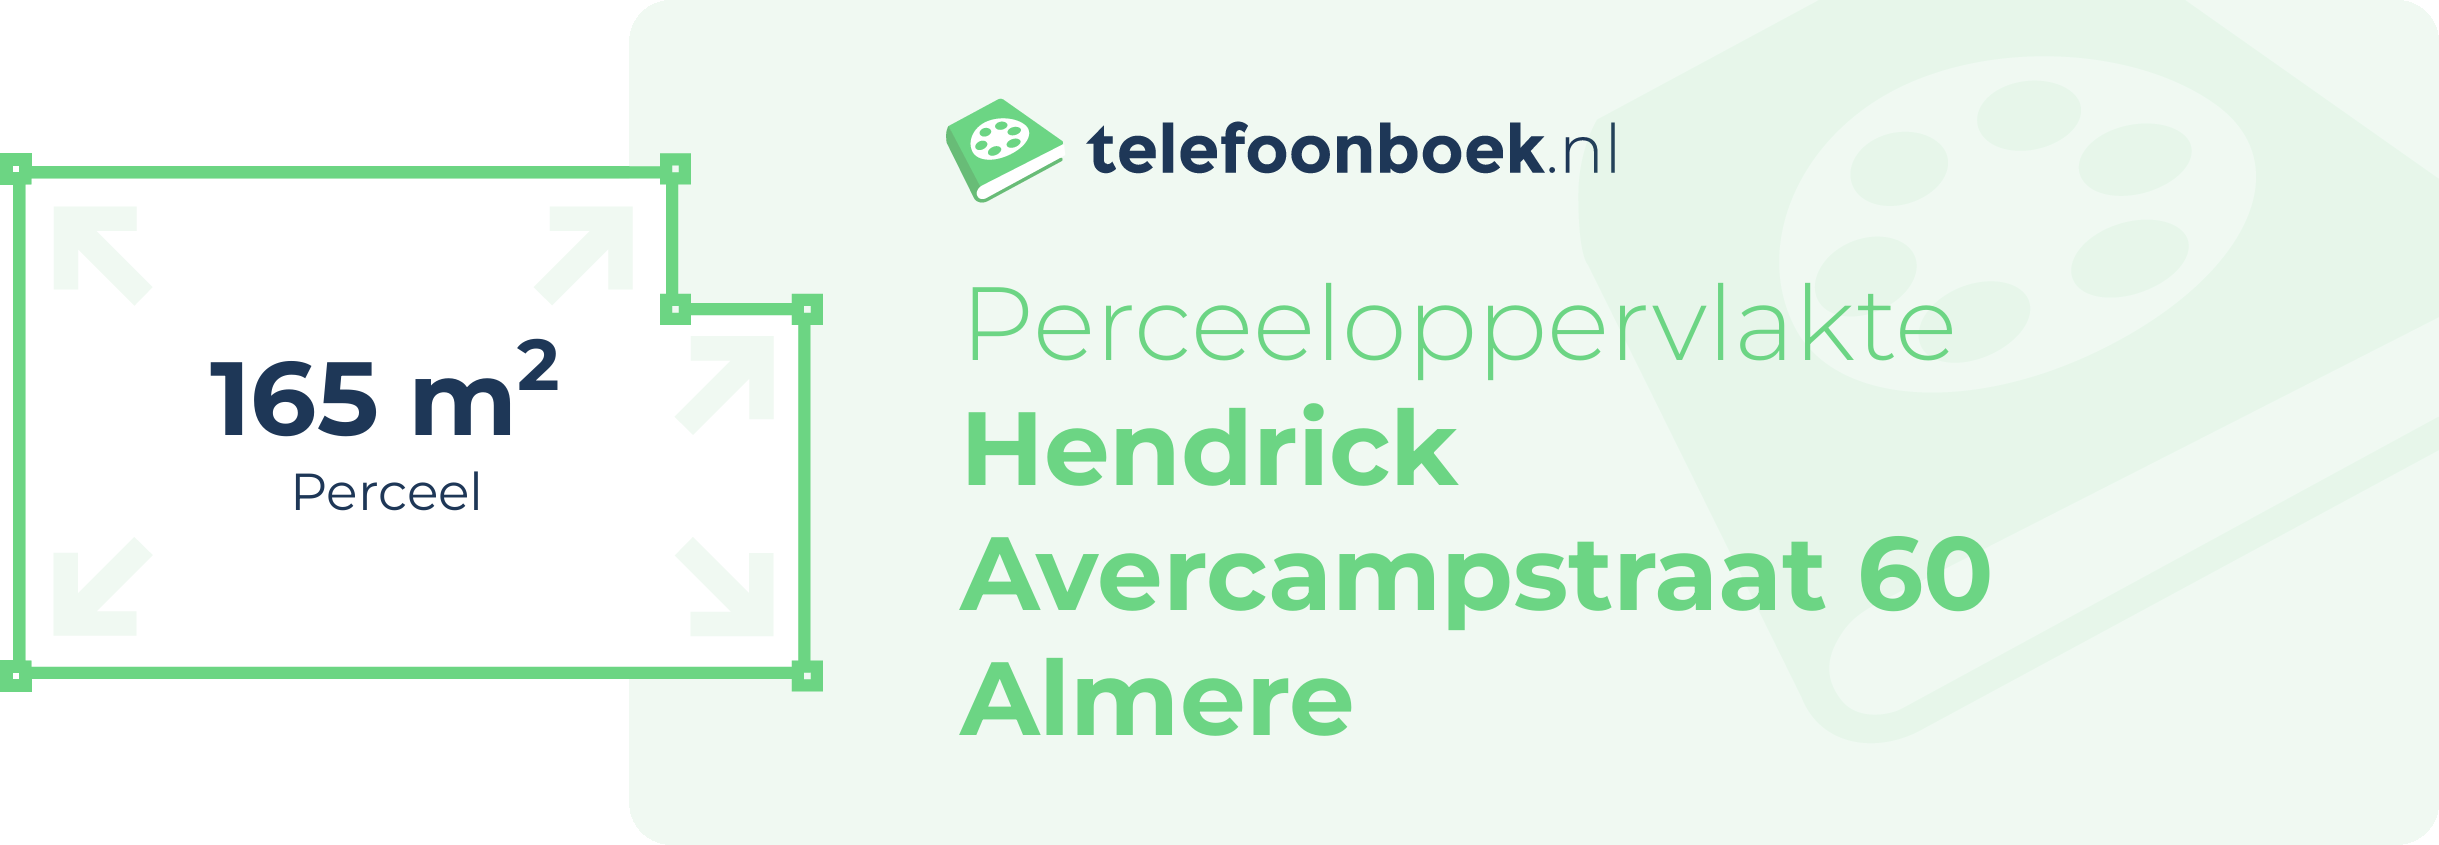 Perceeloppervlakte Hendrick Avercampstraat 60 Almere